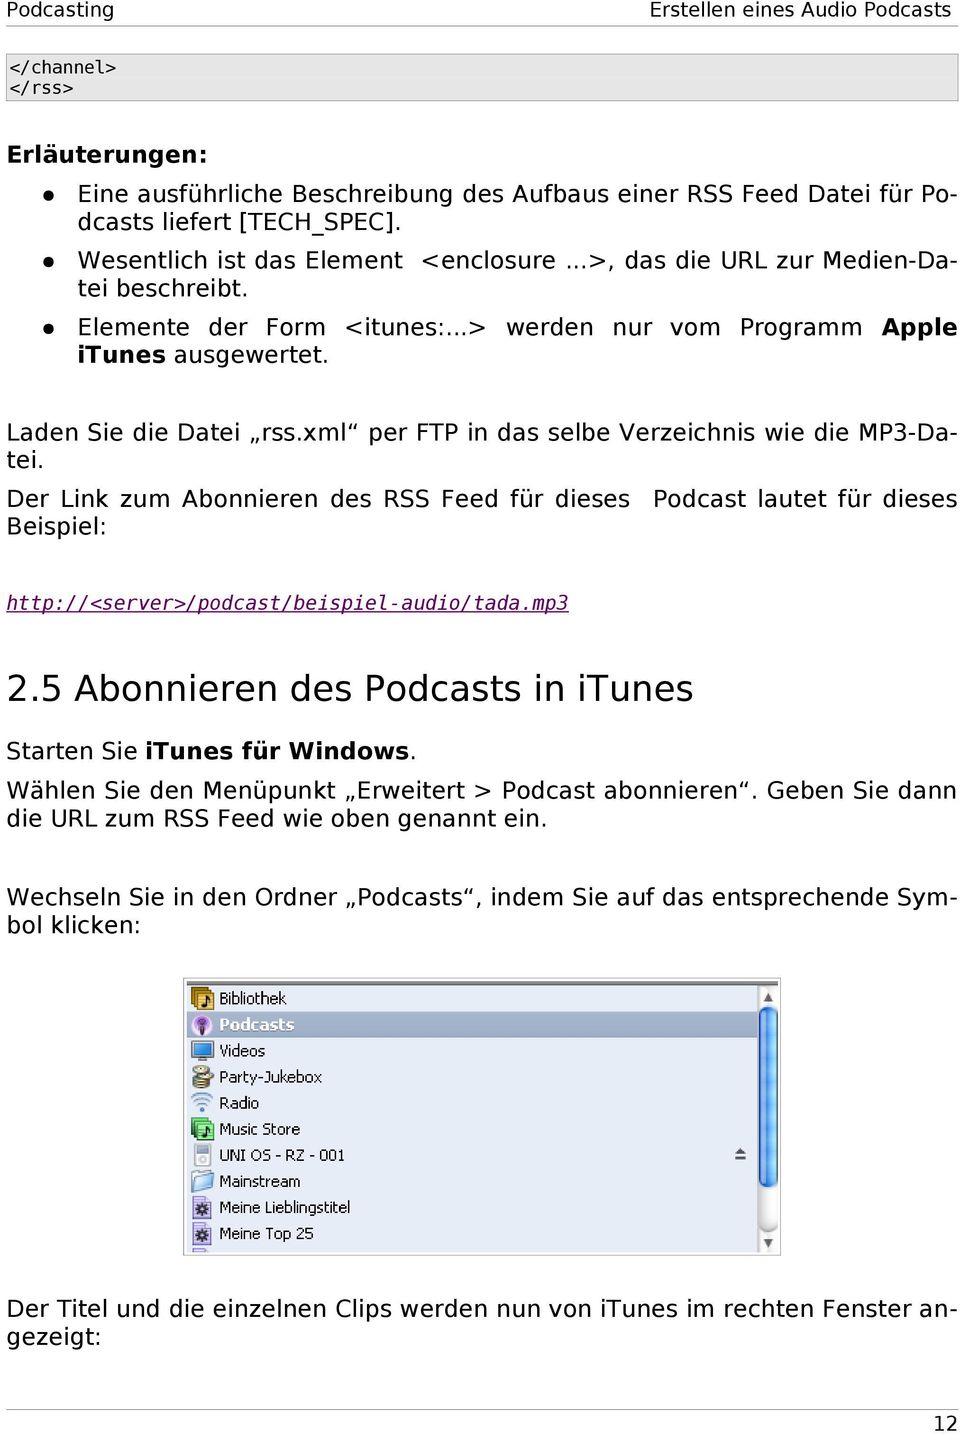 xml per FTP in das selbe Verzeichnis wie die MP3-Datei. Der Link zum Abonnieren des RSS Feed für dieses Podcast lautet für dieses Beispiel: http://<server>/podcast/beispiel-audio/tada.mp3 2.